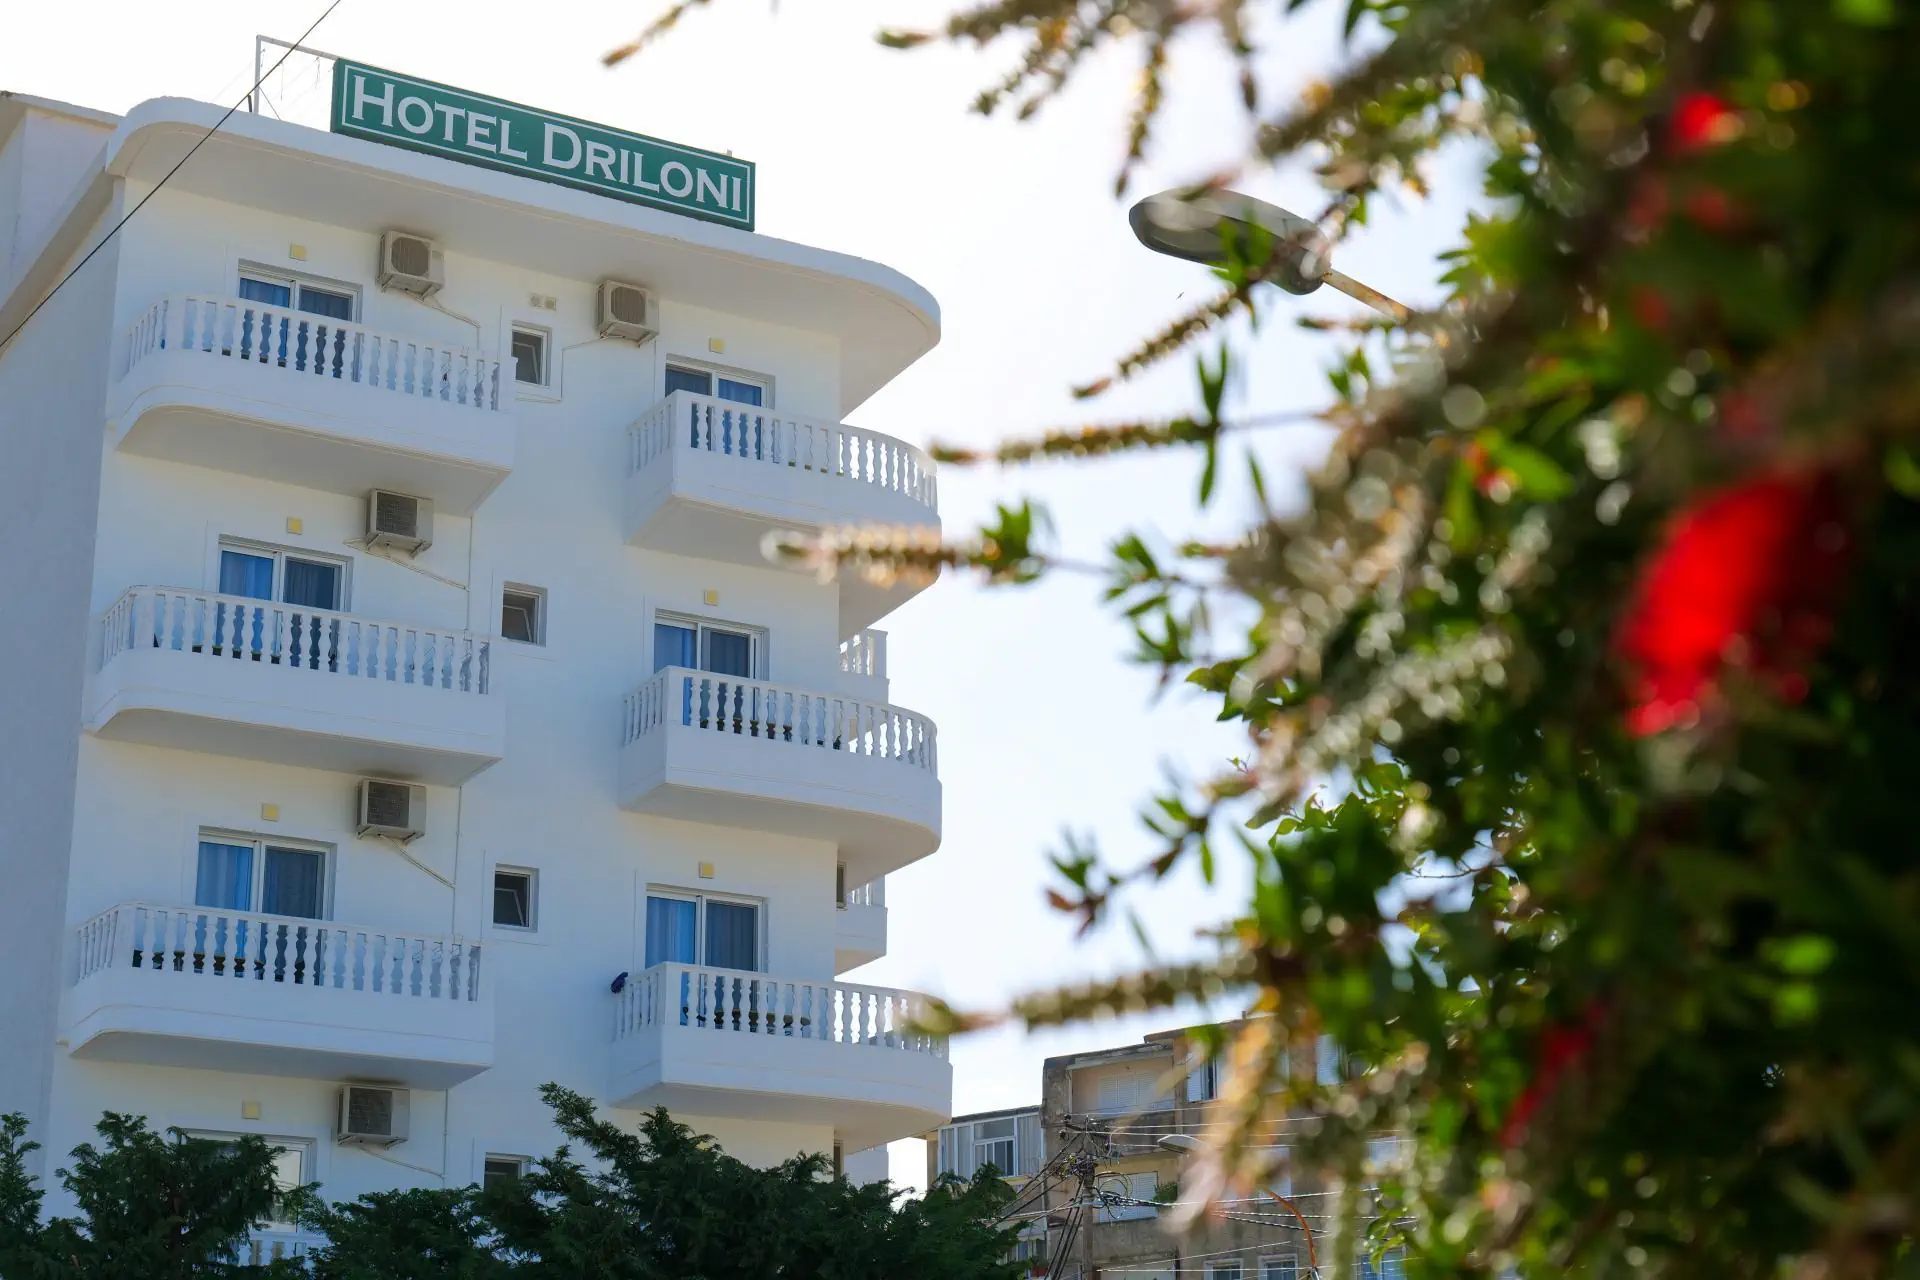 Albania Wybrzeże Jońskie  Ksamil Hotel Drilon